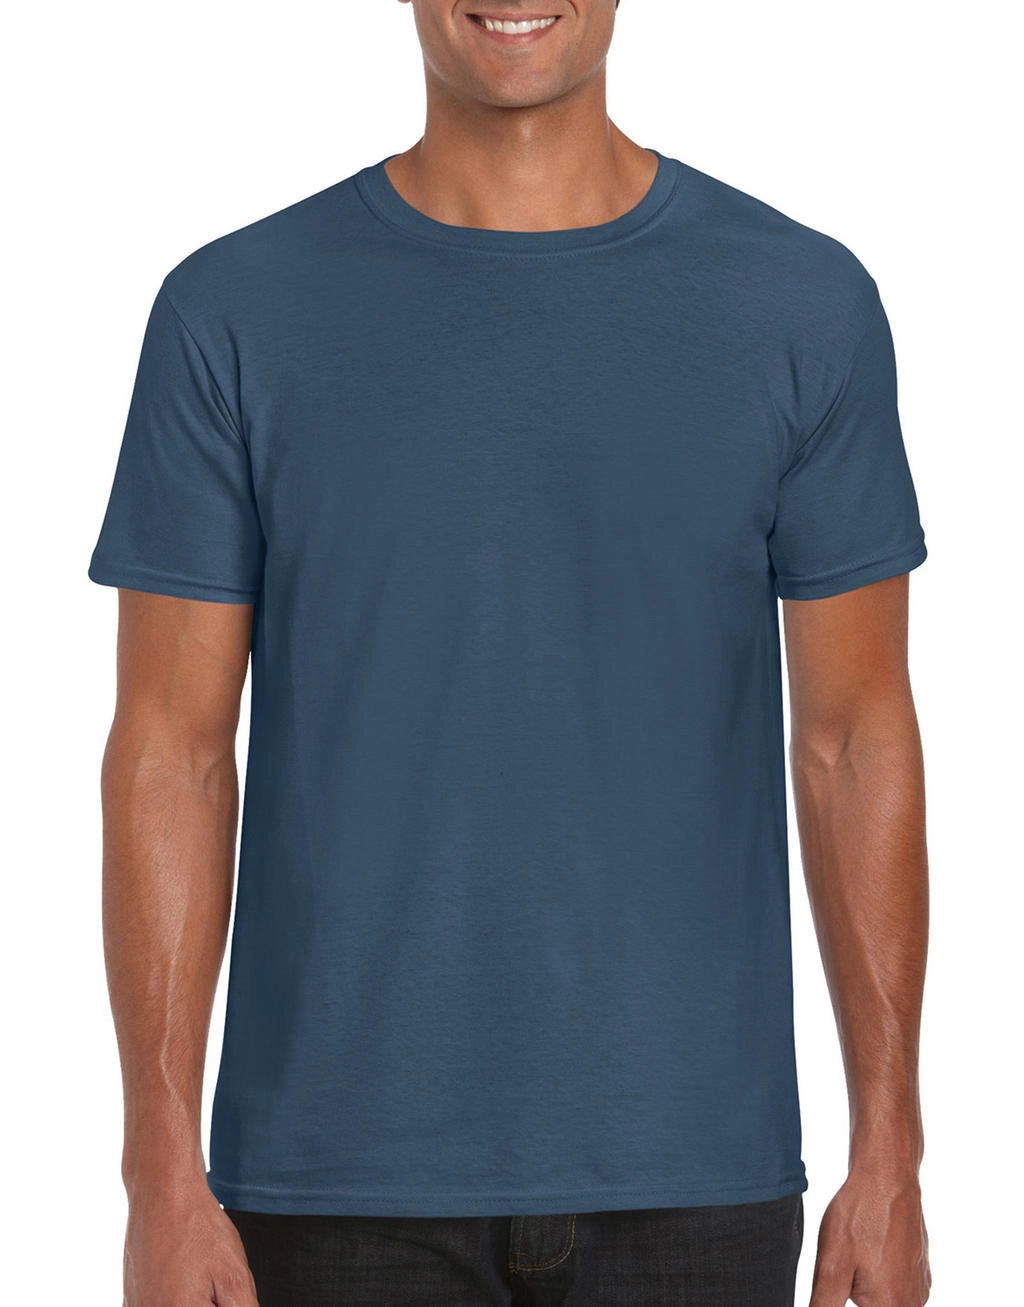 Softstyle® Ring Spun T-Shirt zum Besticken und Bedrucken in der Farbe Indigo Blue mit Ihren Logo, Schriftzug oder Motiv.